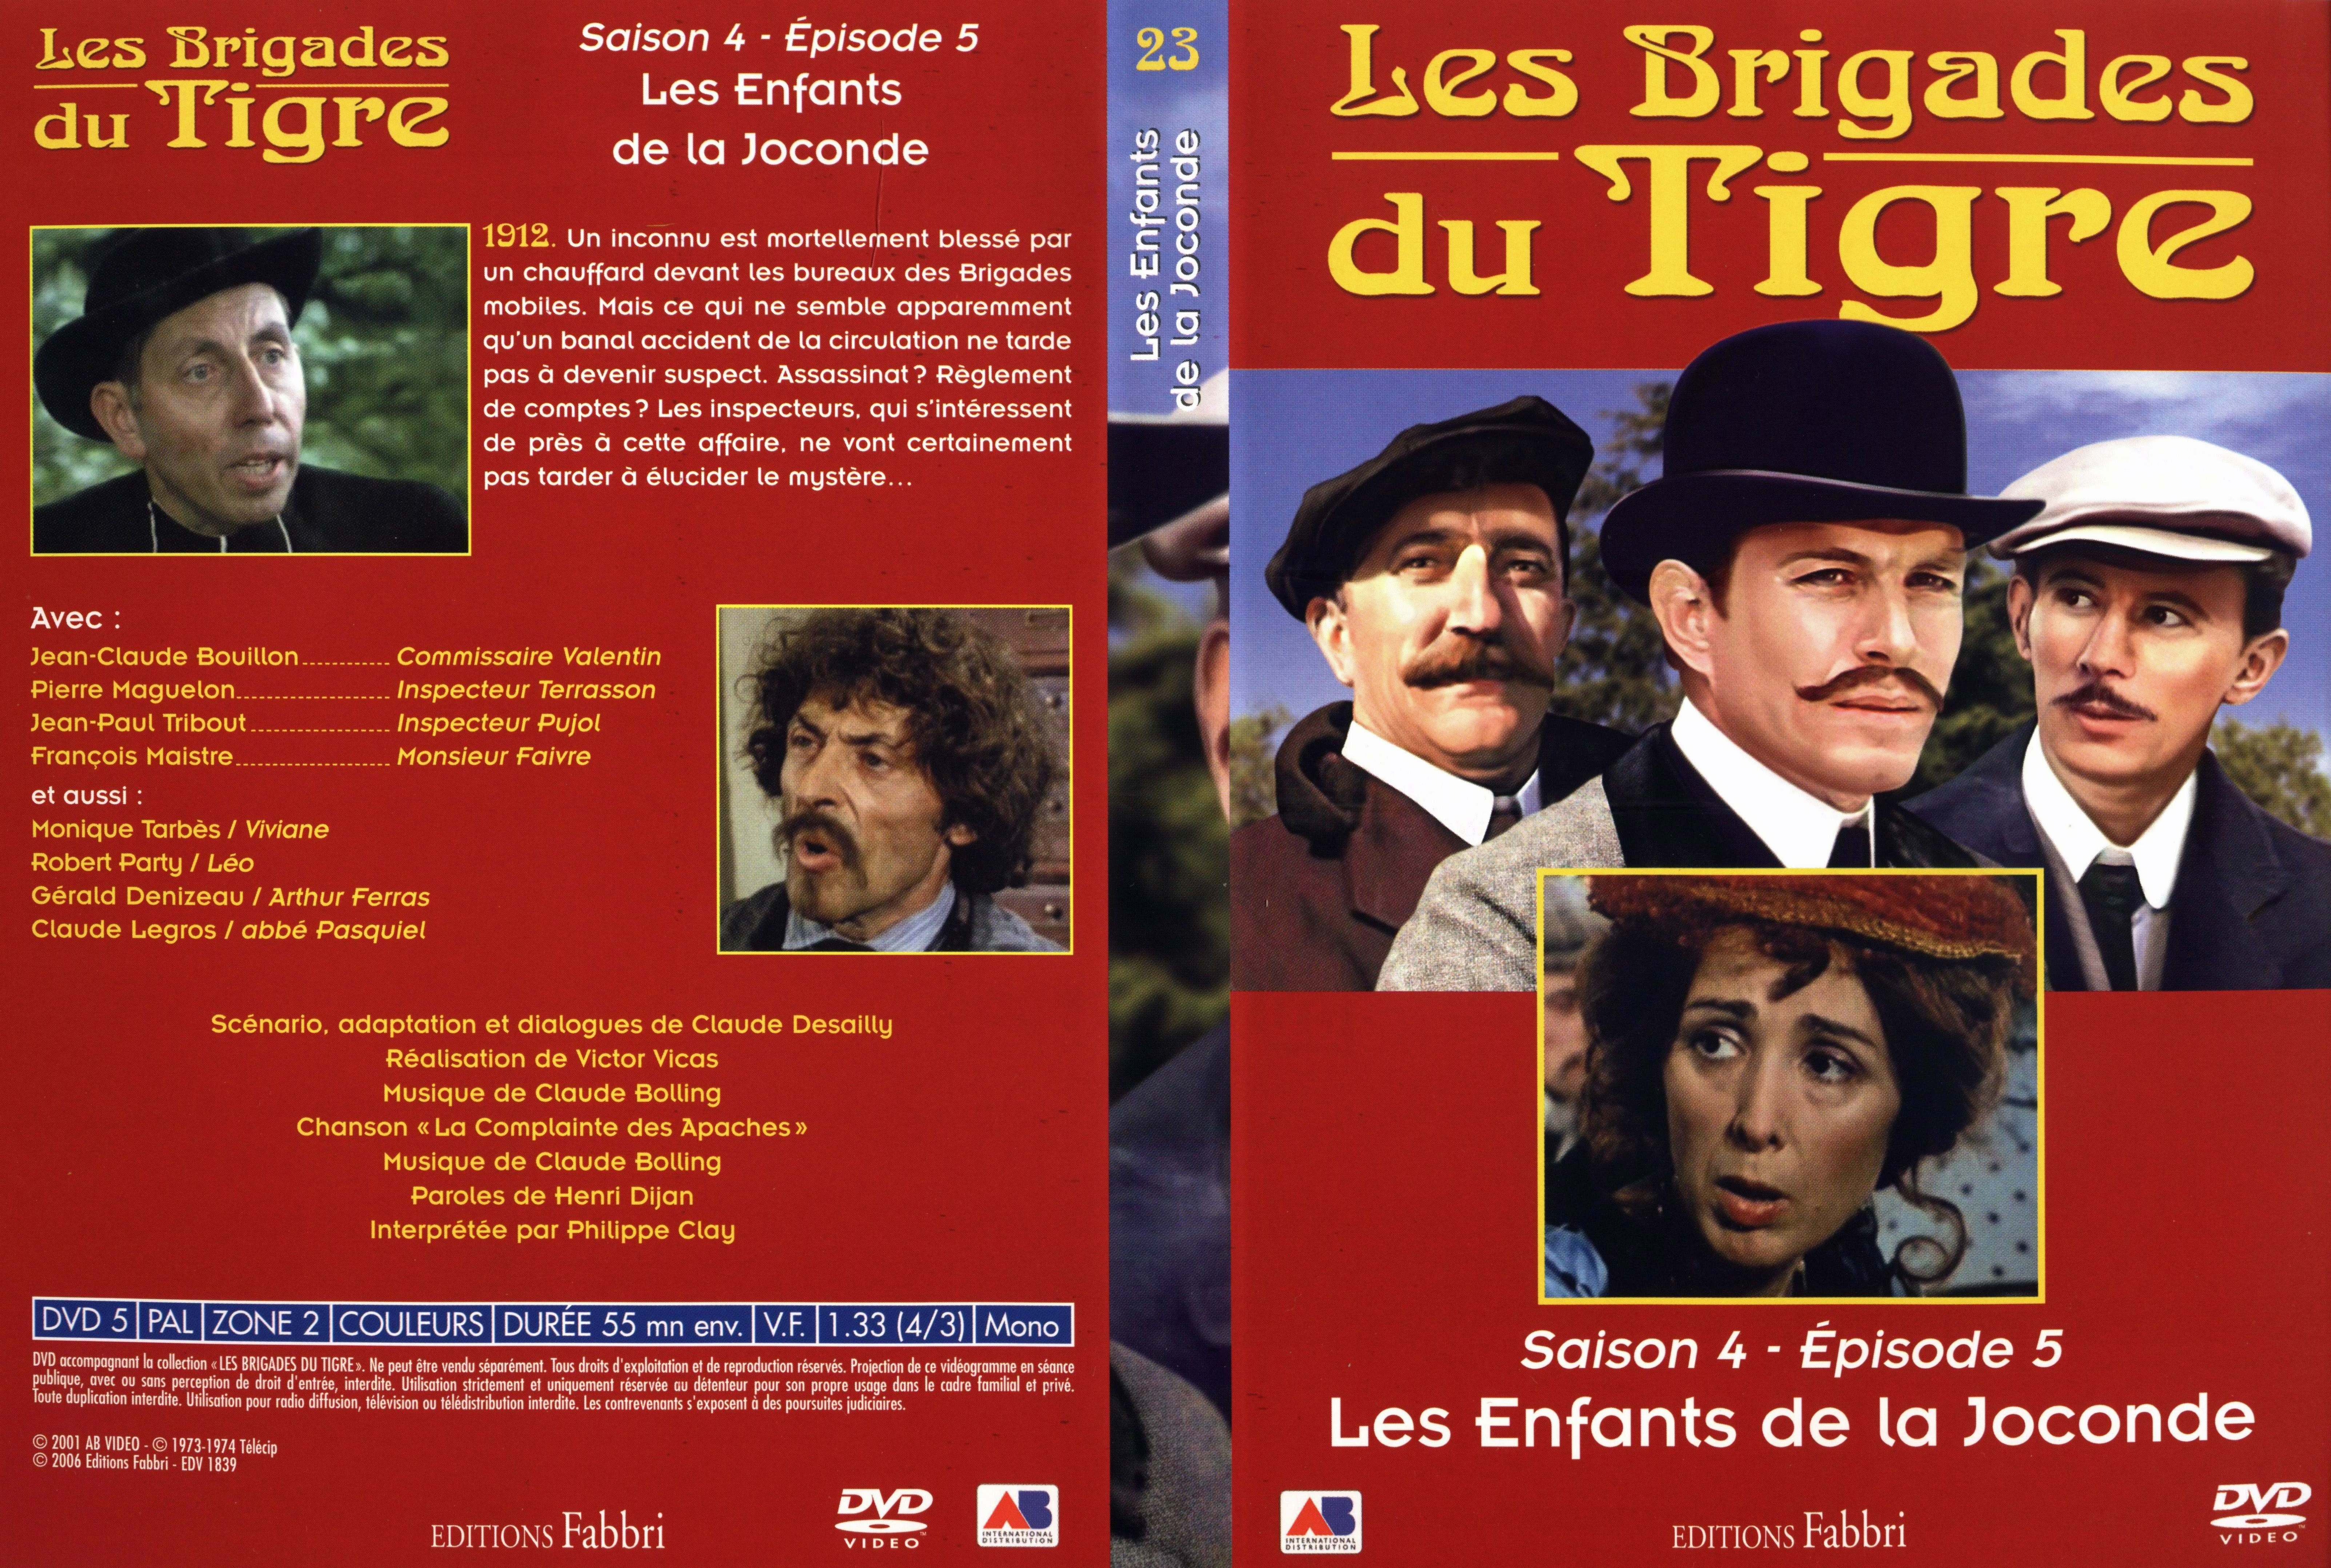 Jaquette DVD Les brigades du tigre saison 4 pisode 5